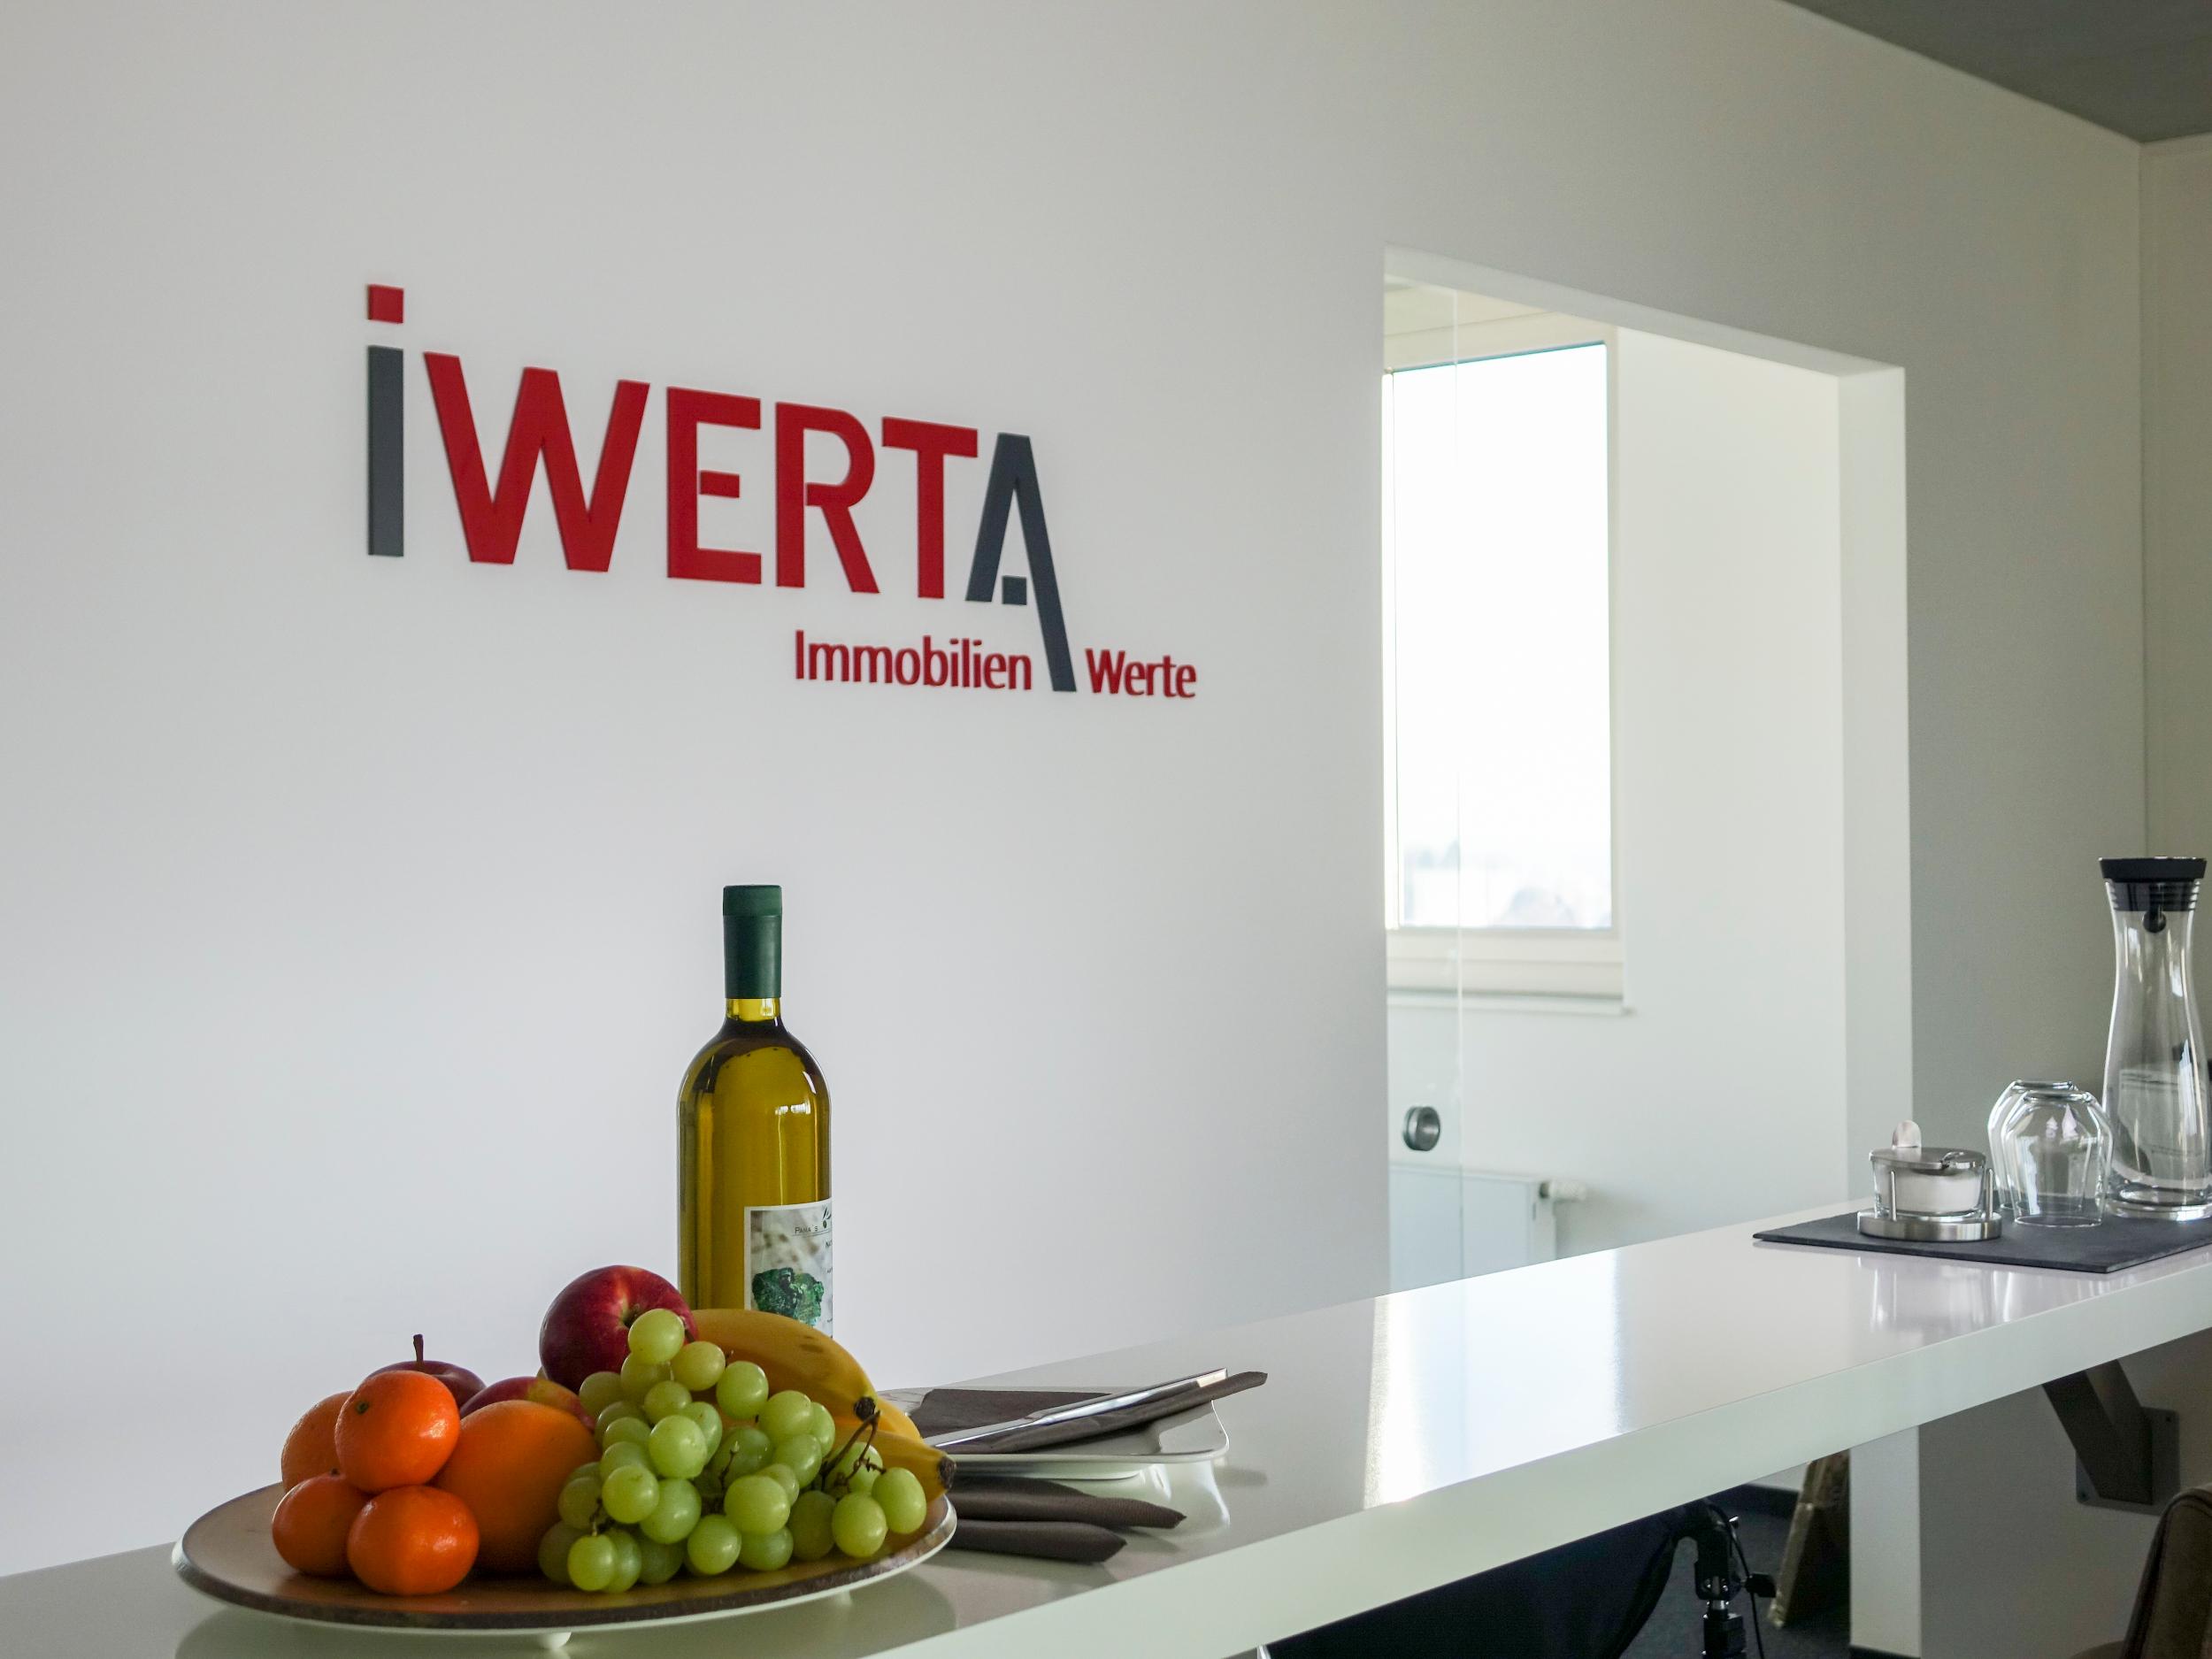 Iwerta Immobilien: Empfang und Eingangsbereich